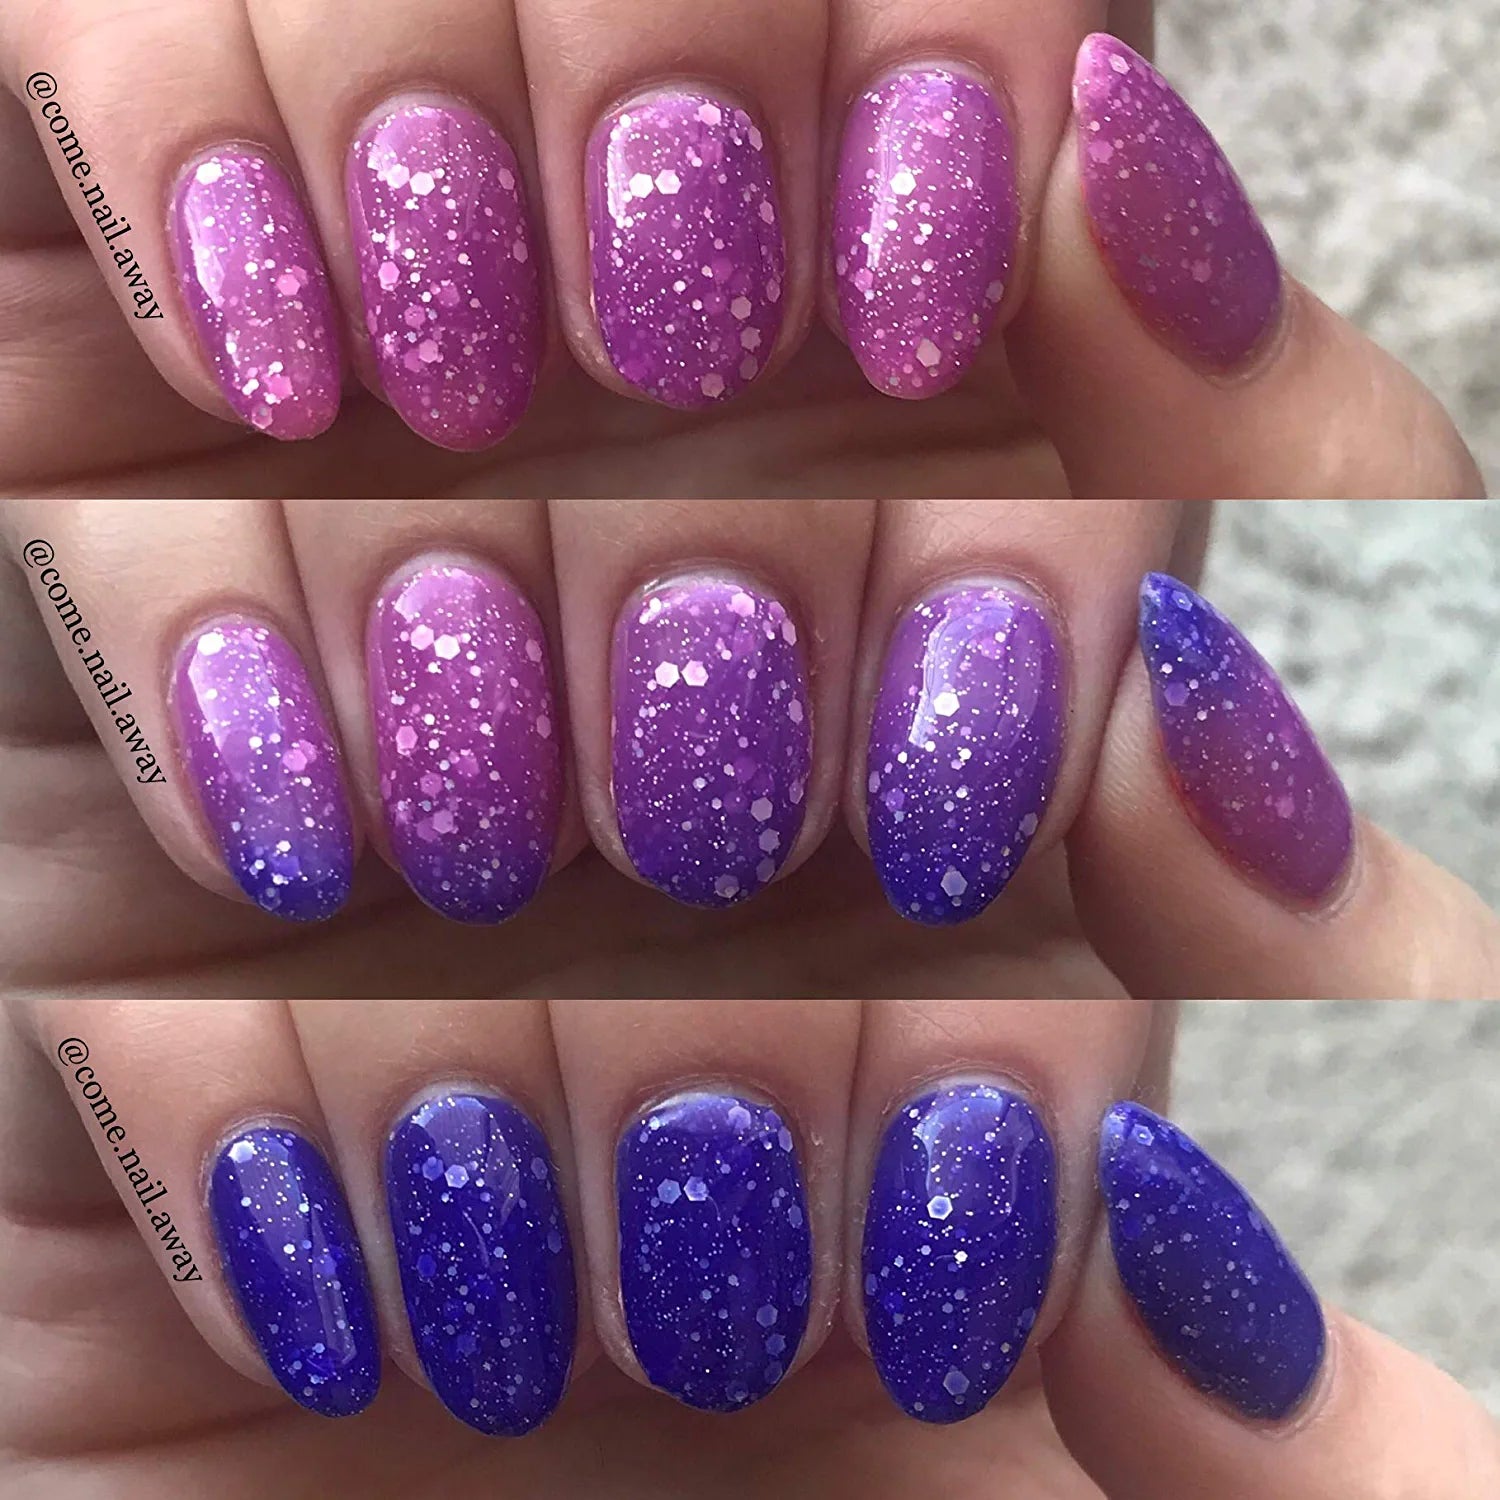 mood changing nail polish colors